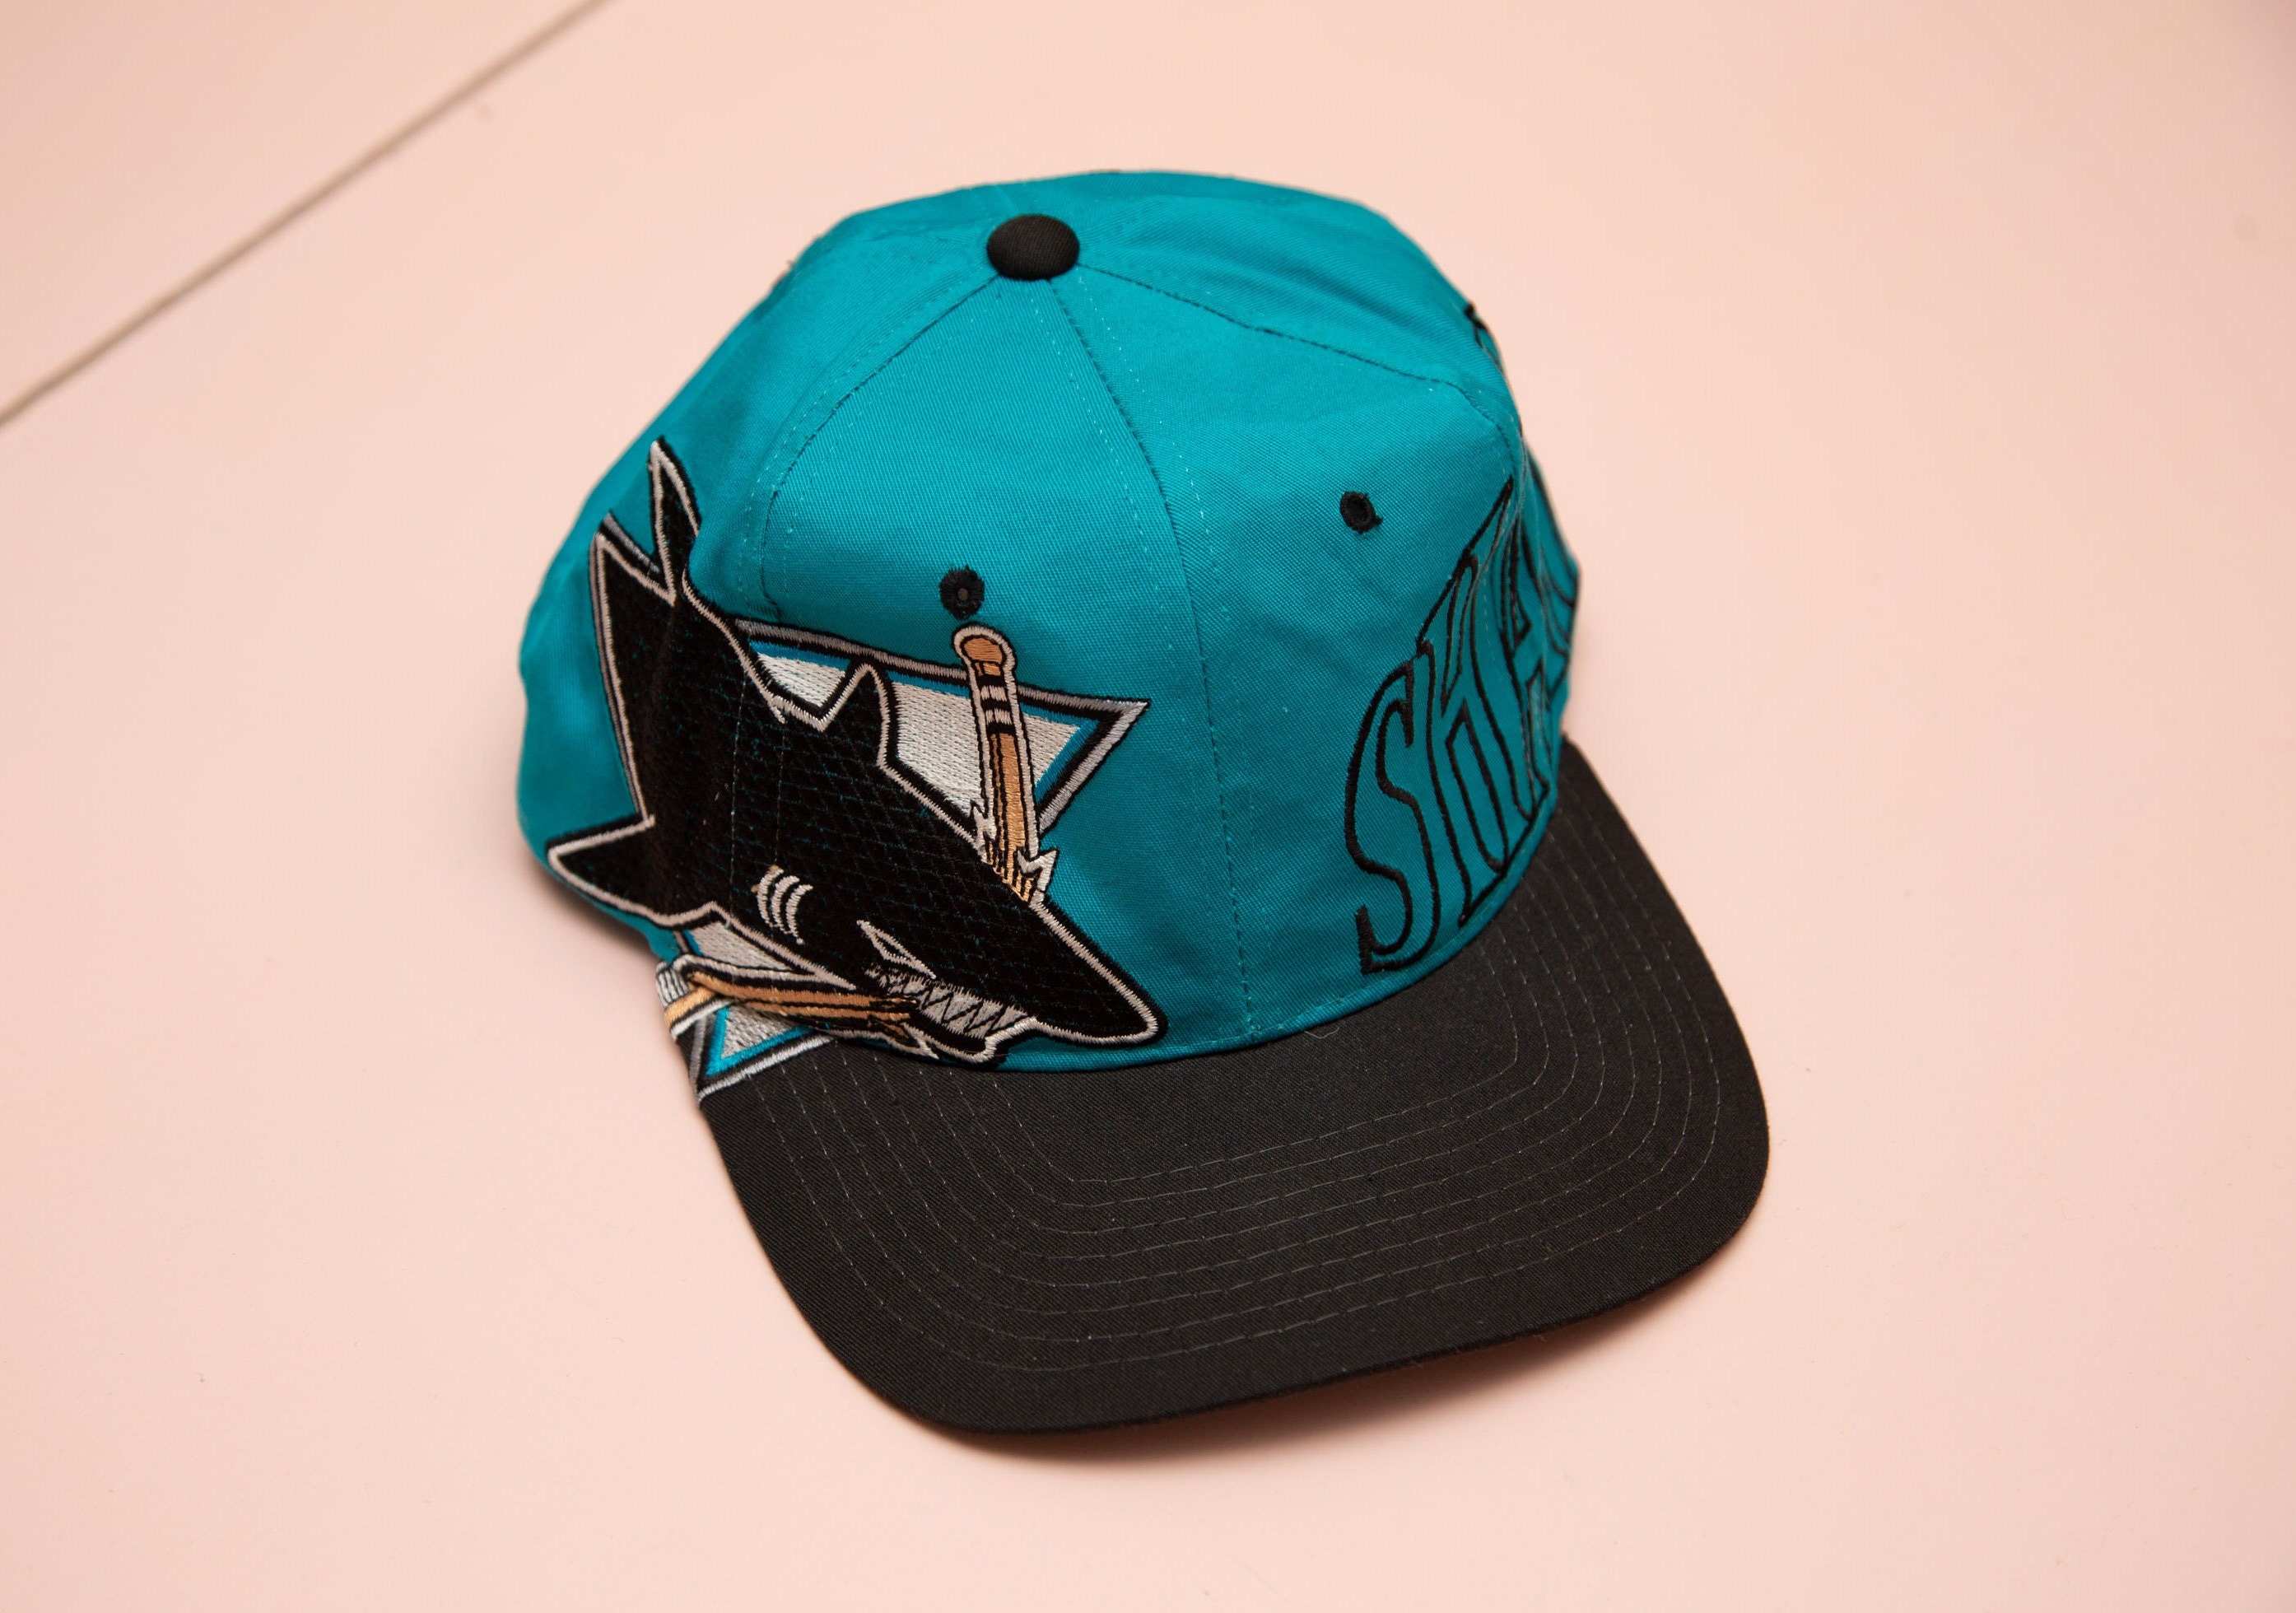 NHL San Jose Sharks Hat